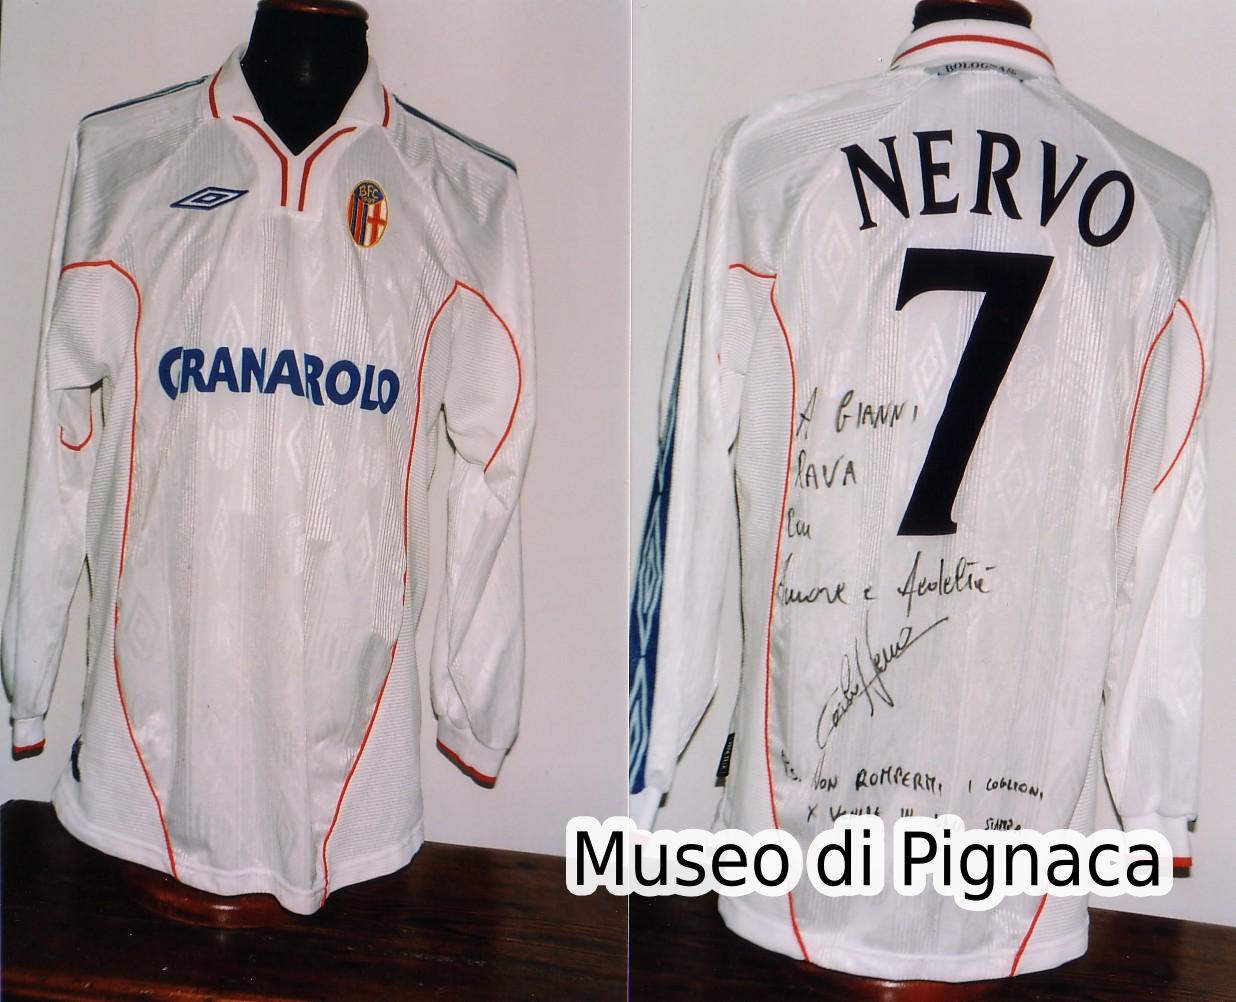 Carlo Nervo - 2000-01 Maglia bianca 'Umbro'